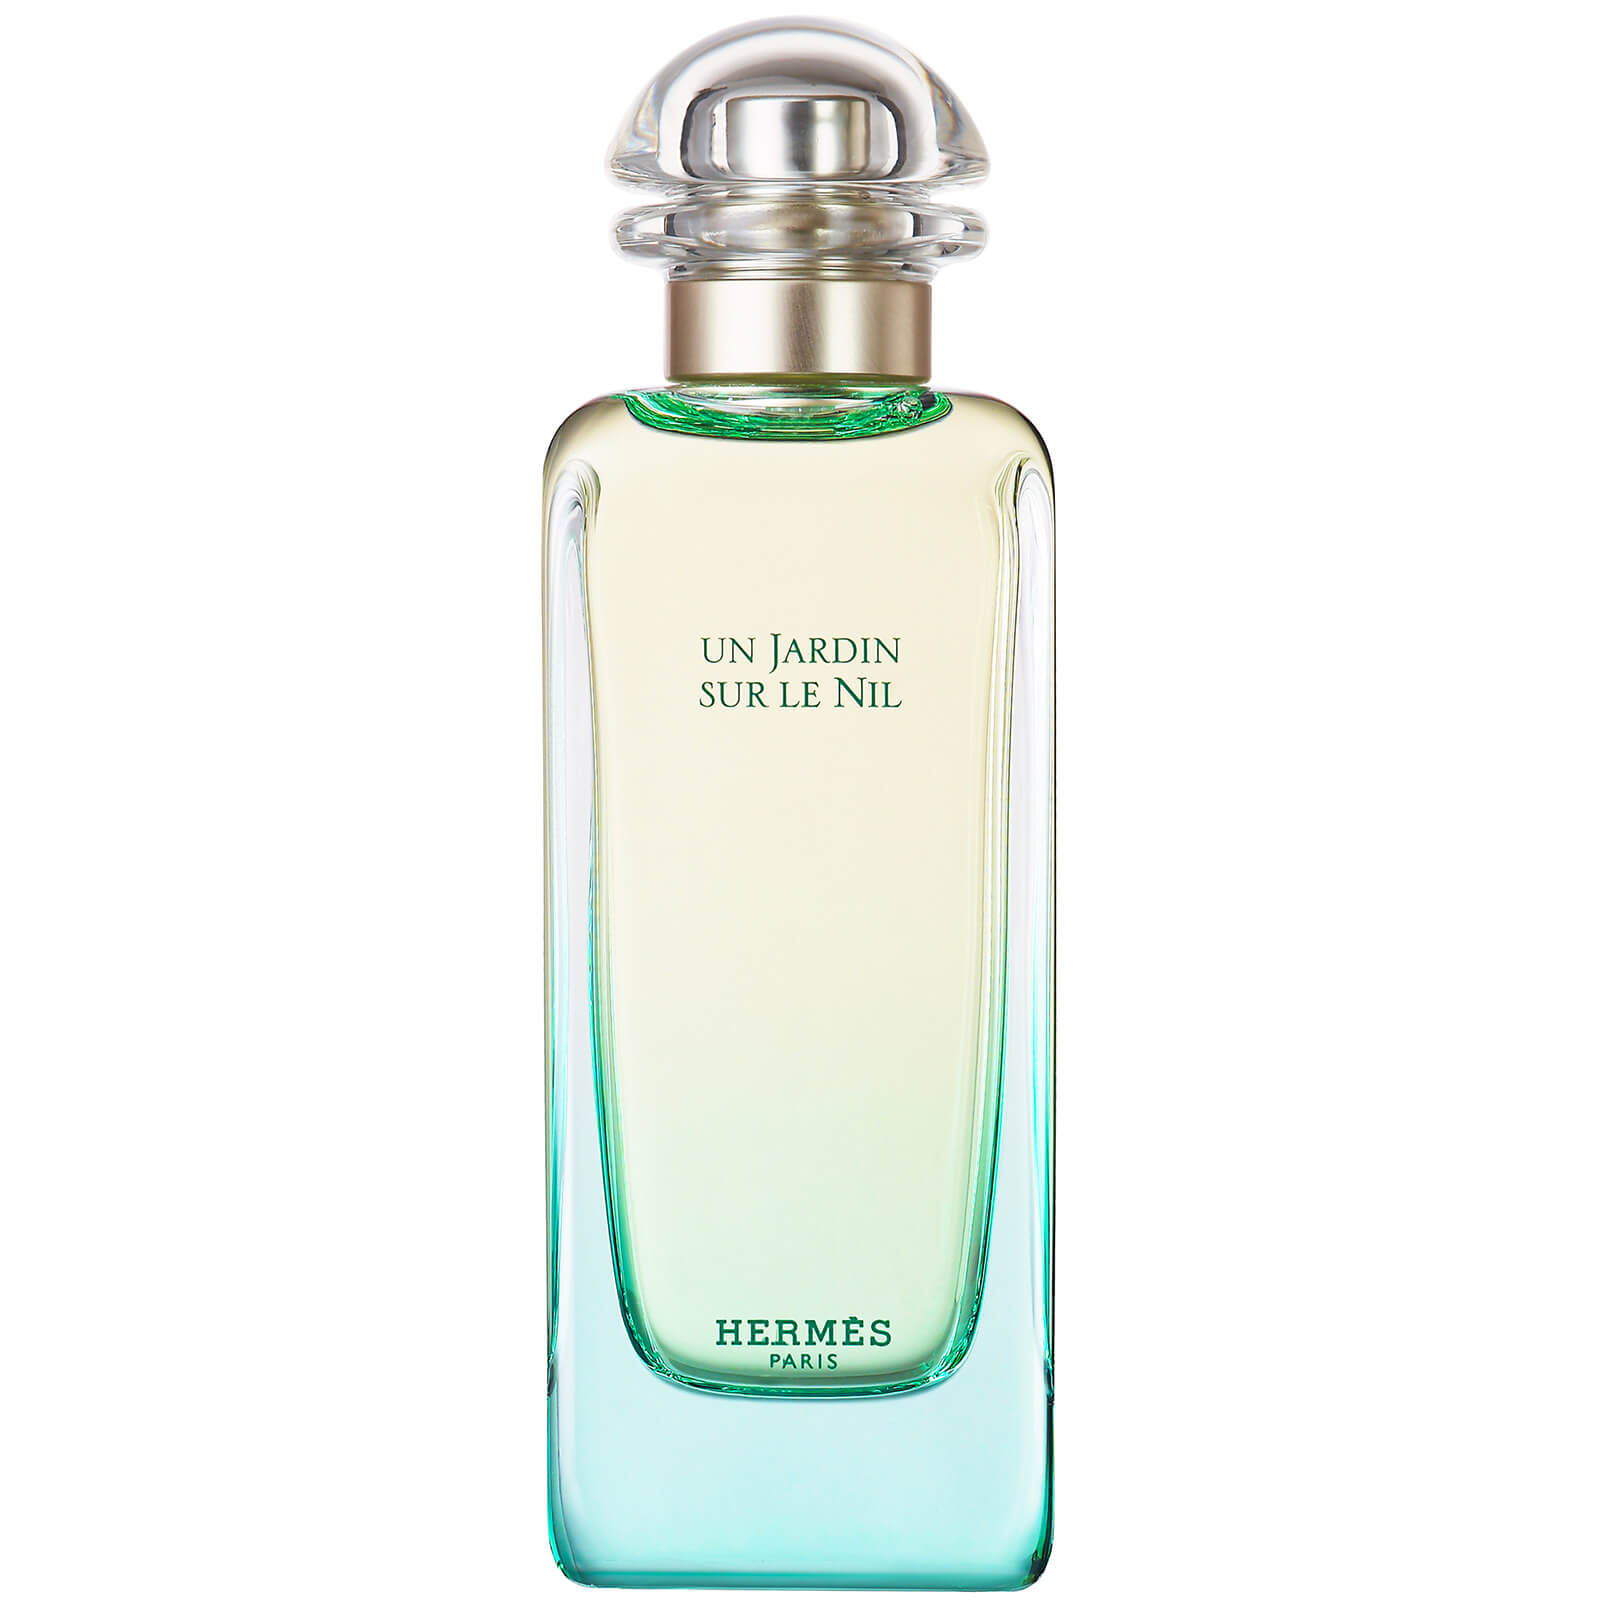 Photos - Women's Fragrance Hermes Hermès Un Jardin Sur Le Nil Eau de Toilette 100ml 20396 